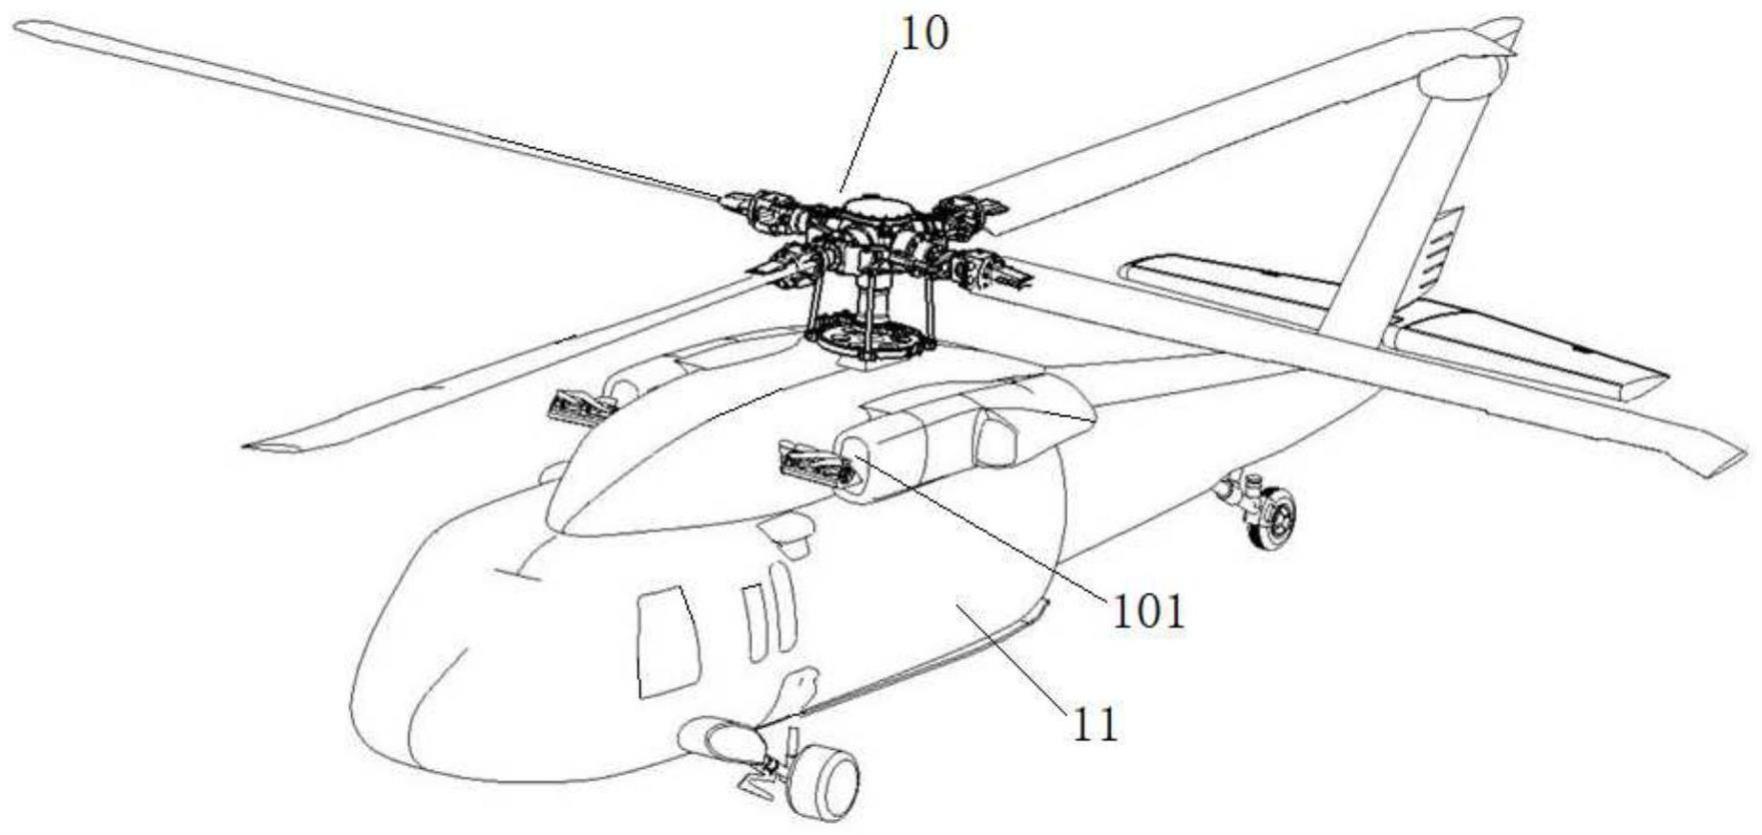 利用内外流场耦合提升直升机性能的引流装置及直升机的制作方法